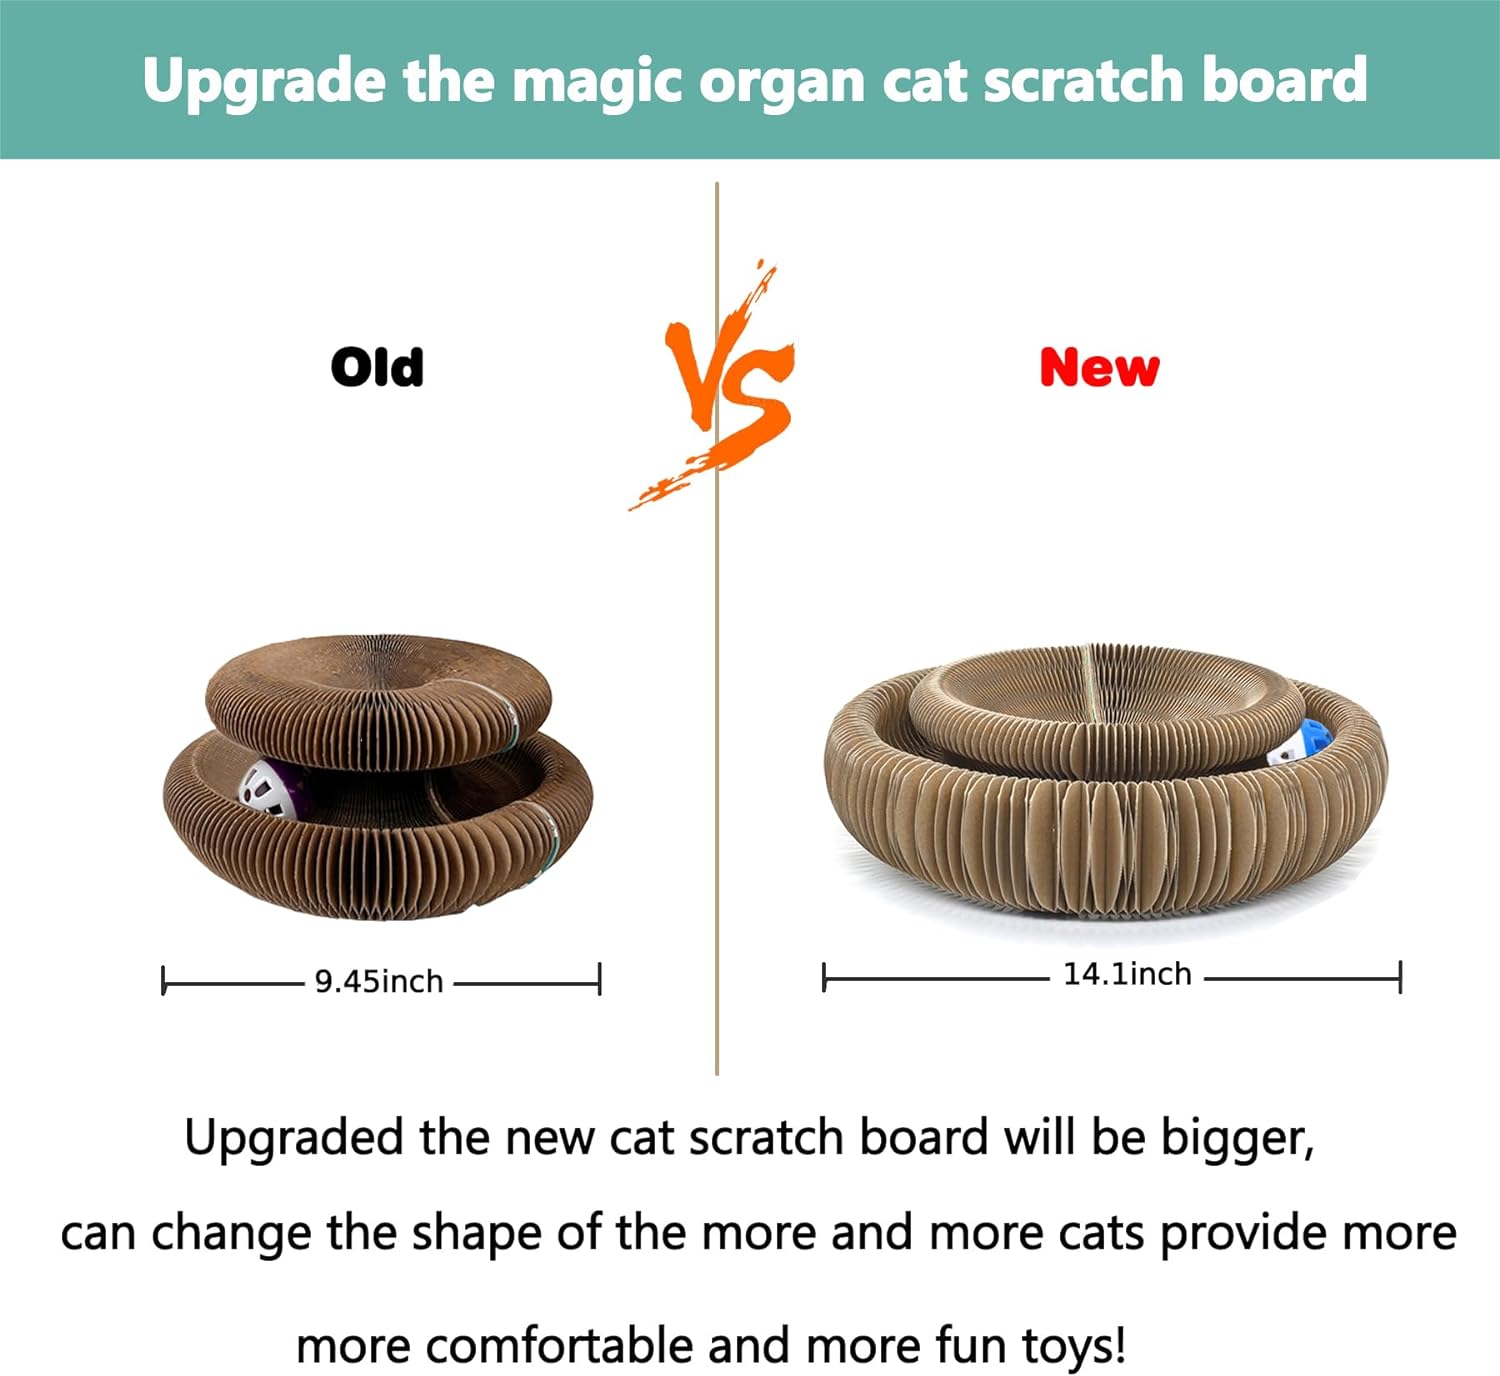 Tabla rascadora plegable de órgano mágico para gatos, cartón reciclable